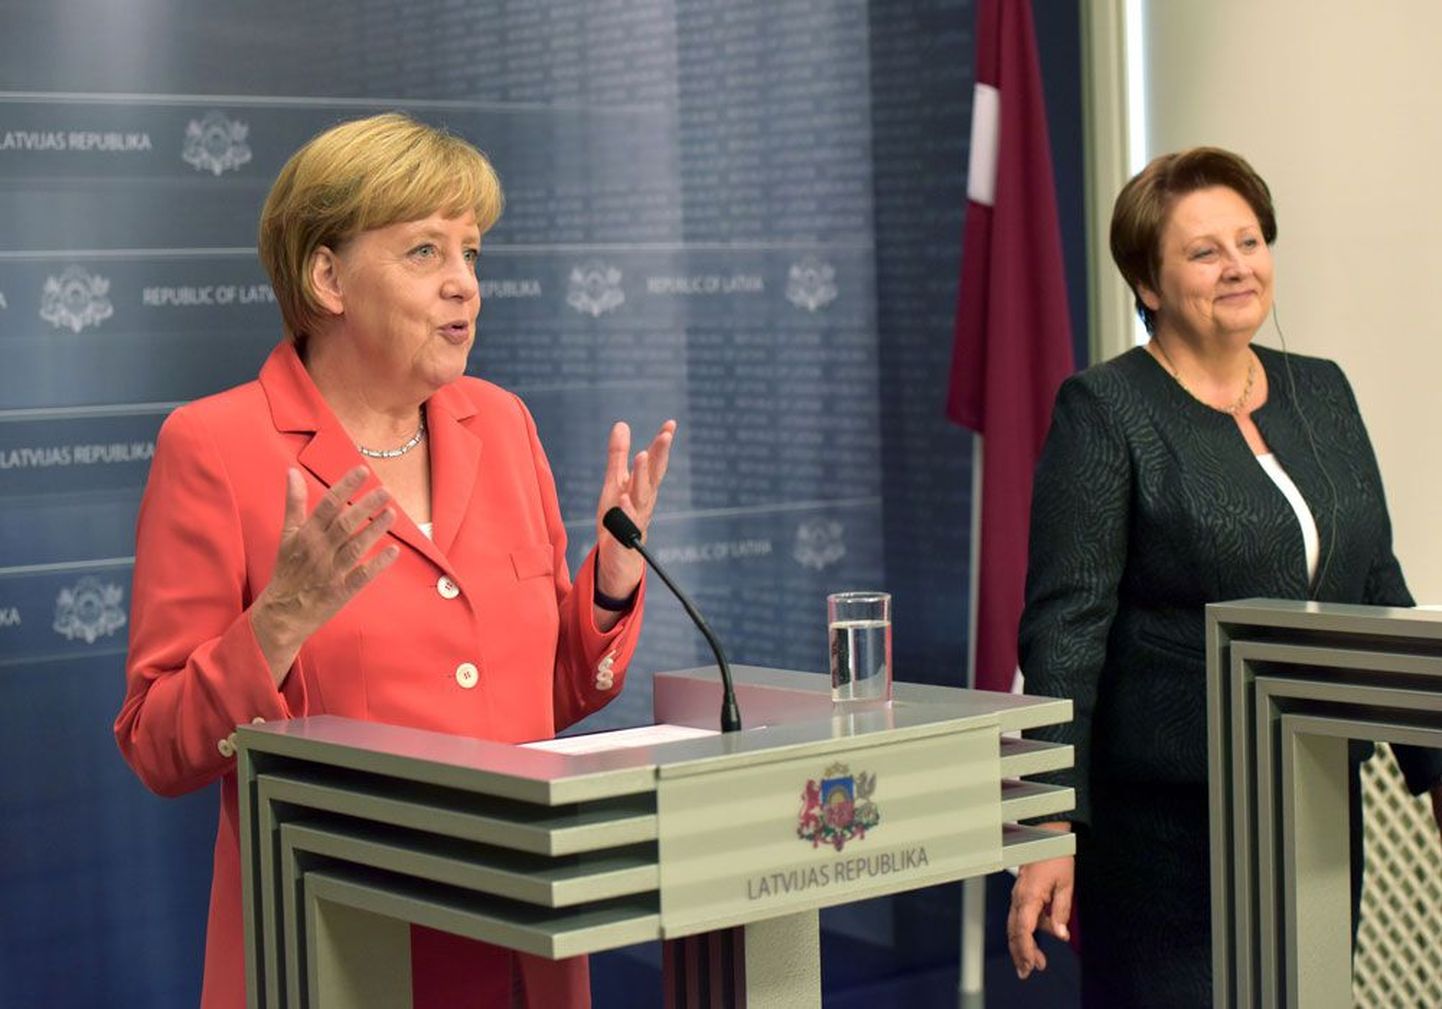 озиция, занятая Ангелой Меркель во время визита в Ригу, стала сюрпризом для стран Балтии. Справа – премьер-министр Латвии Лаймдота Страуюма.